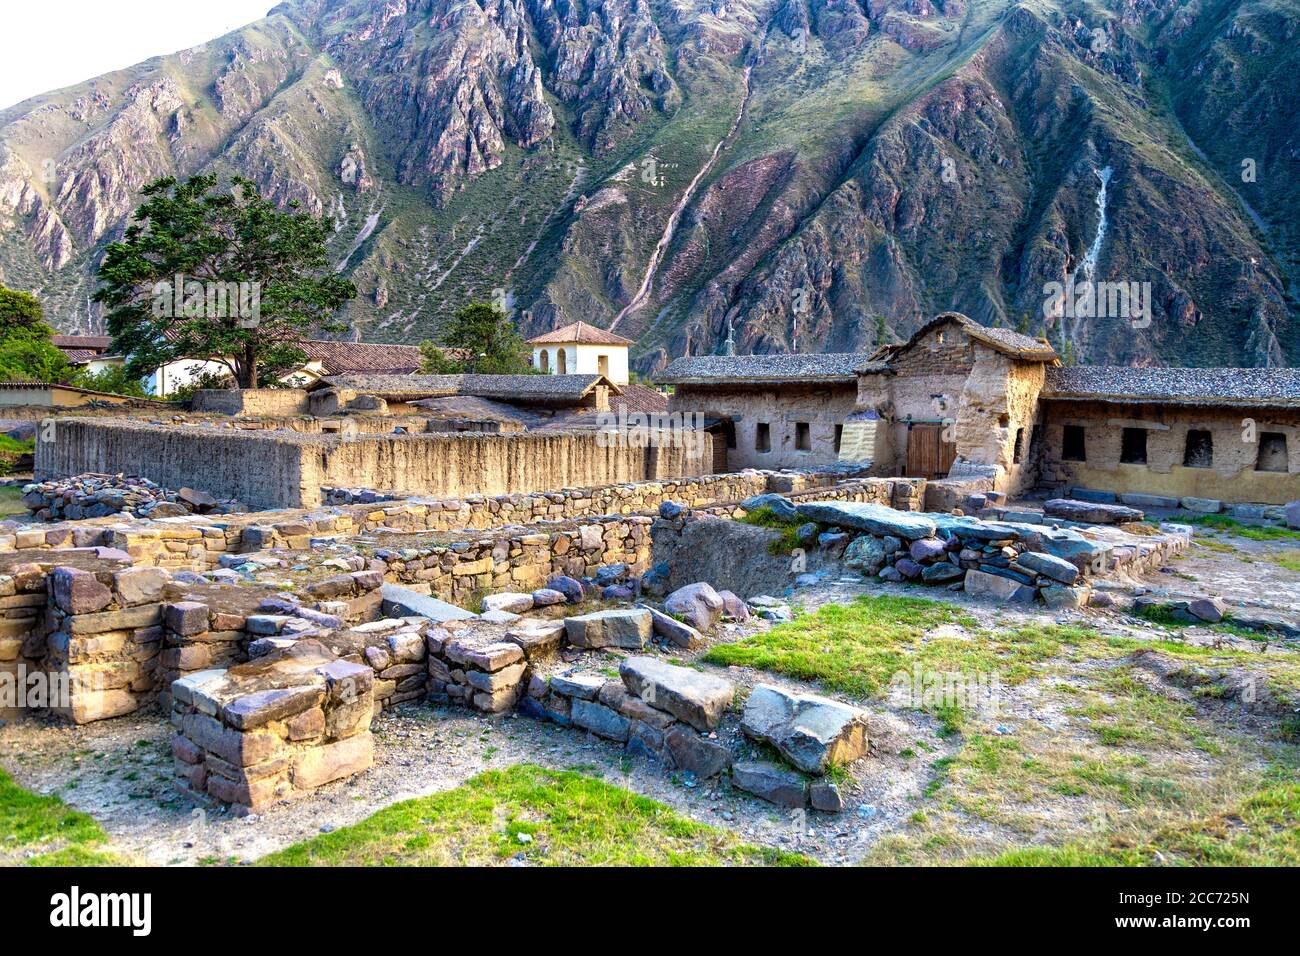 Ruines de l'ancien domaine royal inca de l'empereur Pachacuti, Ollantaytambo, Vallée Sacrée, Pérou Banque D'Images